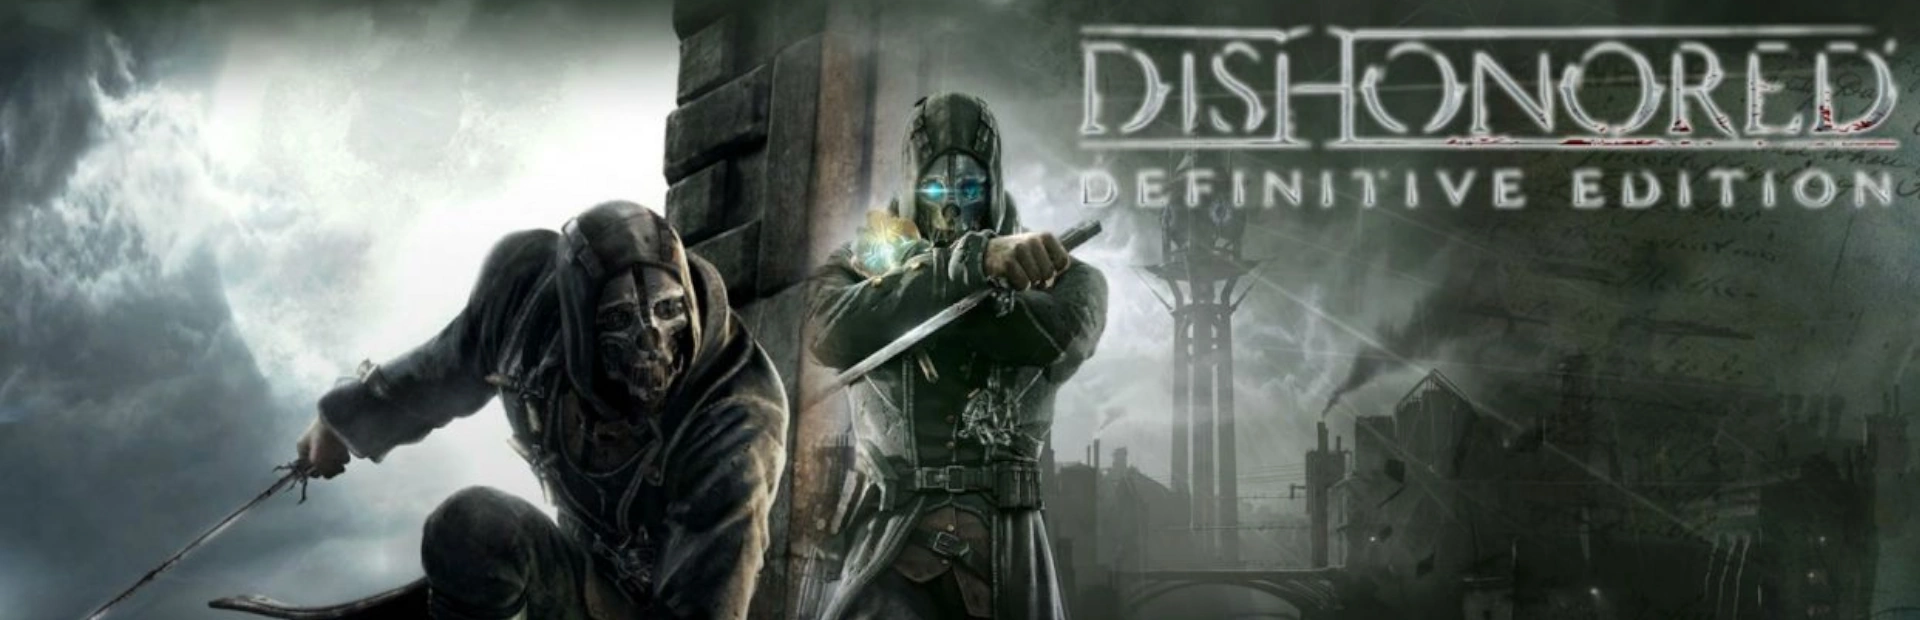 دانلود بازی Dishonored Definitive Edition برای PC | گیمباتو